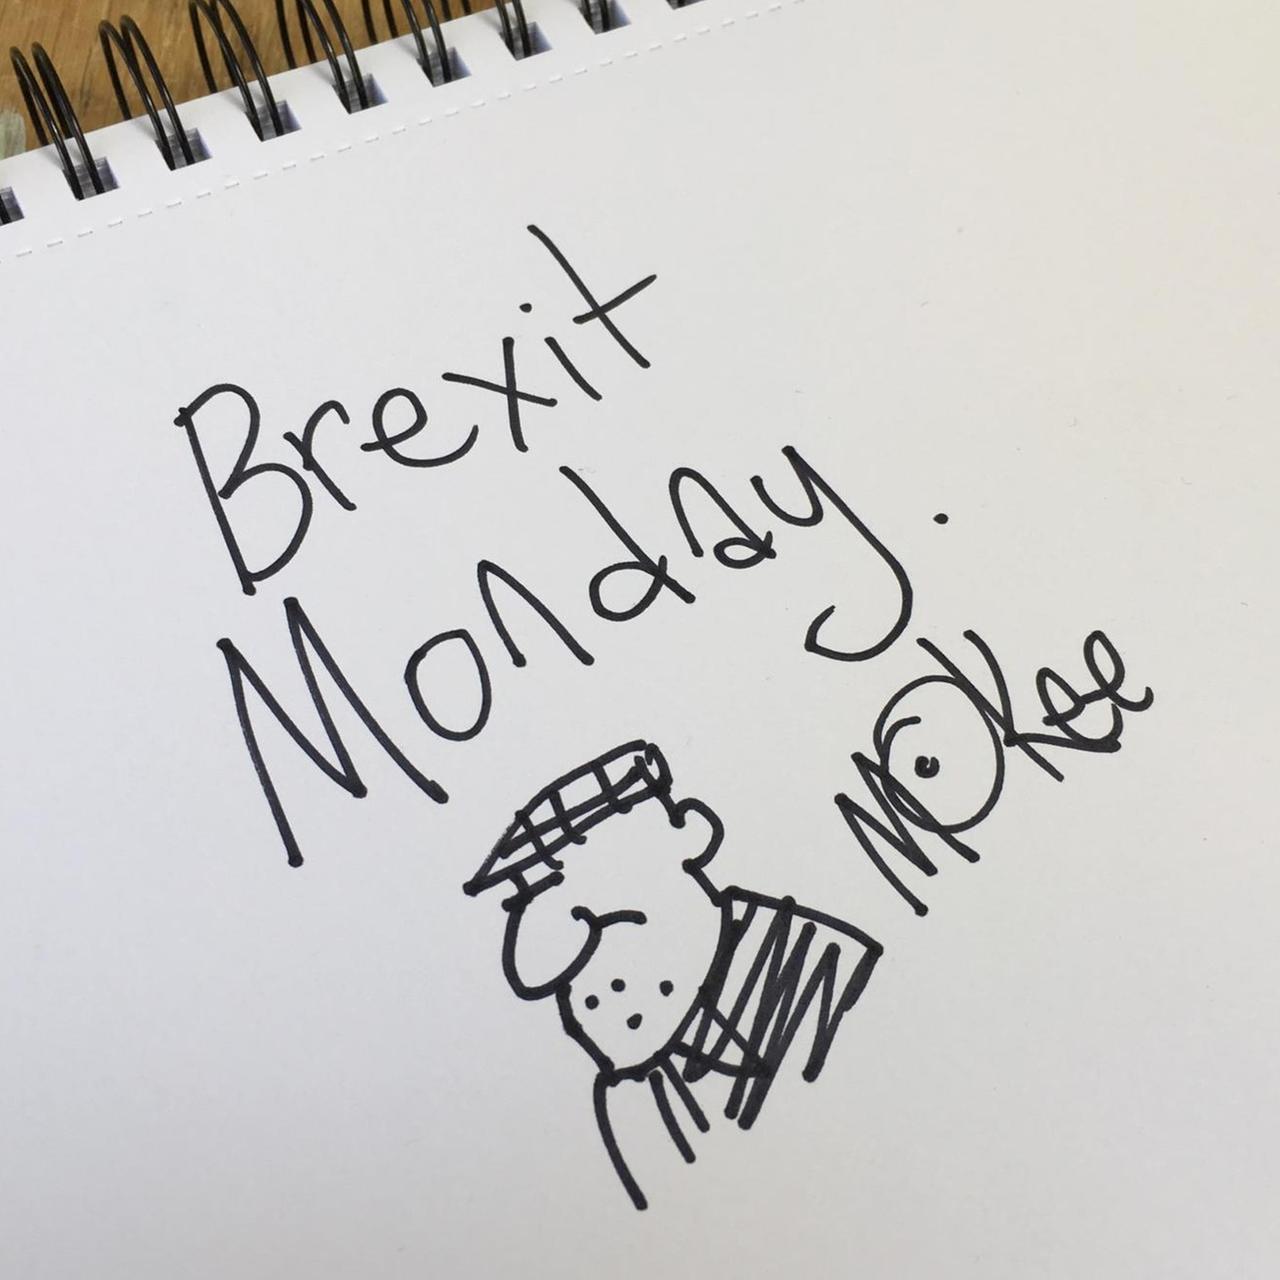 Cartoon-Zeichner Pete McKee hat der Corso-Serie "Brexit Monday" ein Bild gewidmet: Es zeit den Serientitel und einen Mann mit Schiebermütze